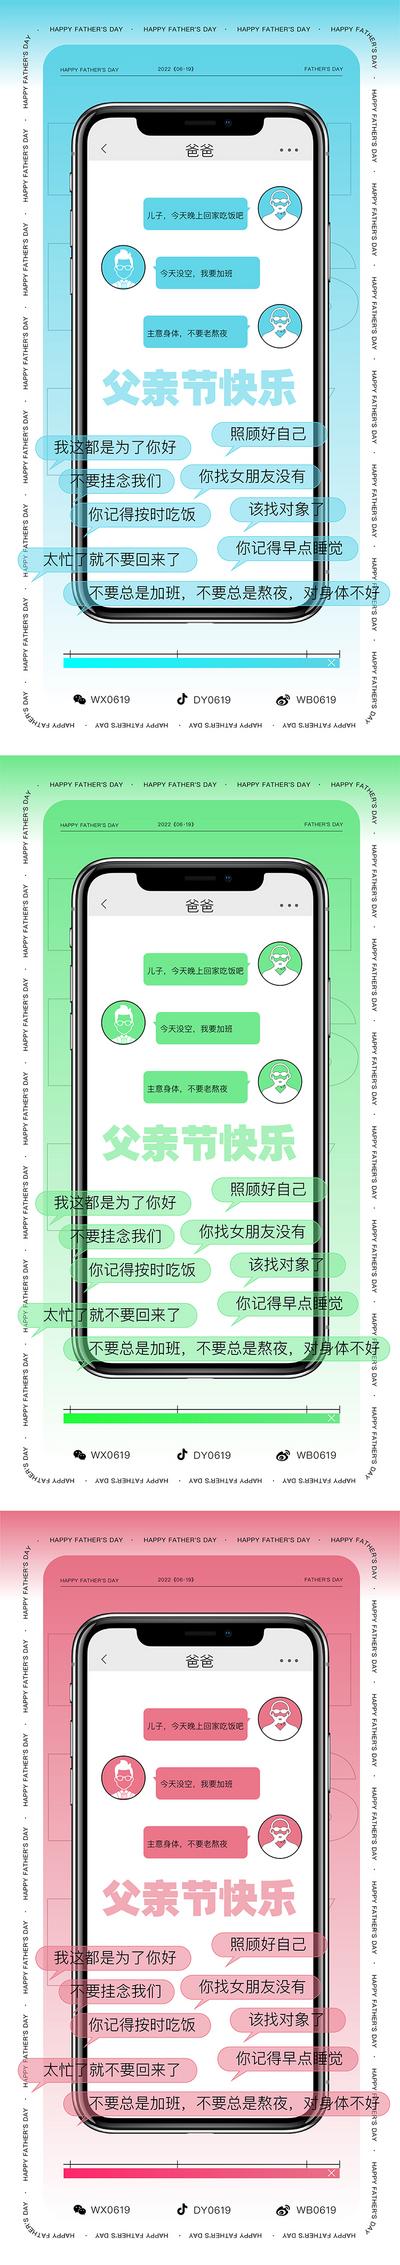 【南门网】广告 海报 节日 父亲节 对话框 社交软件 沟通 界面 语录 聊天 手机 iphone 系列 创意